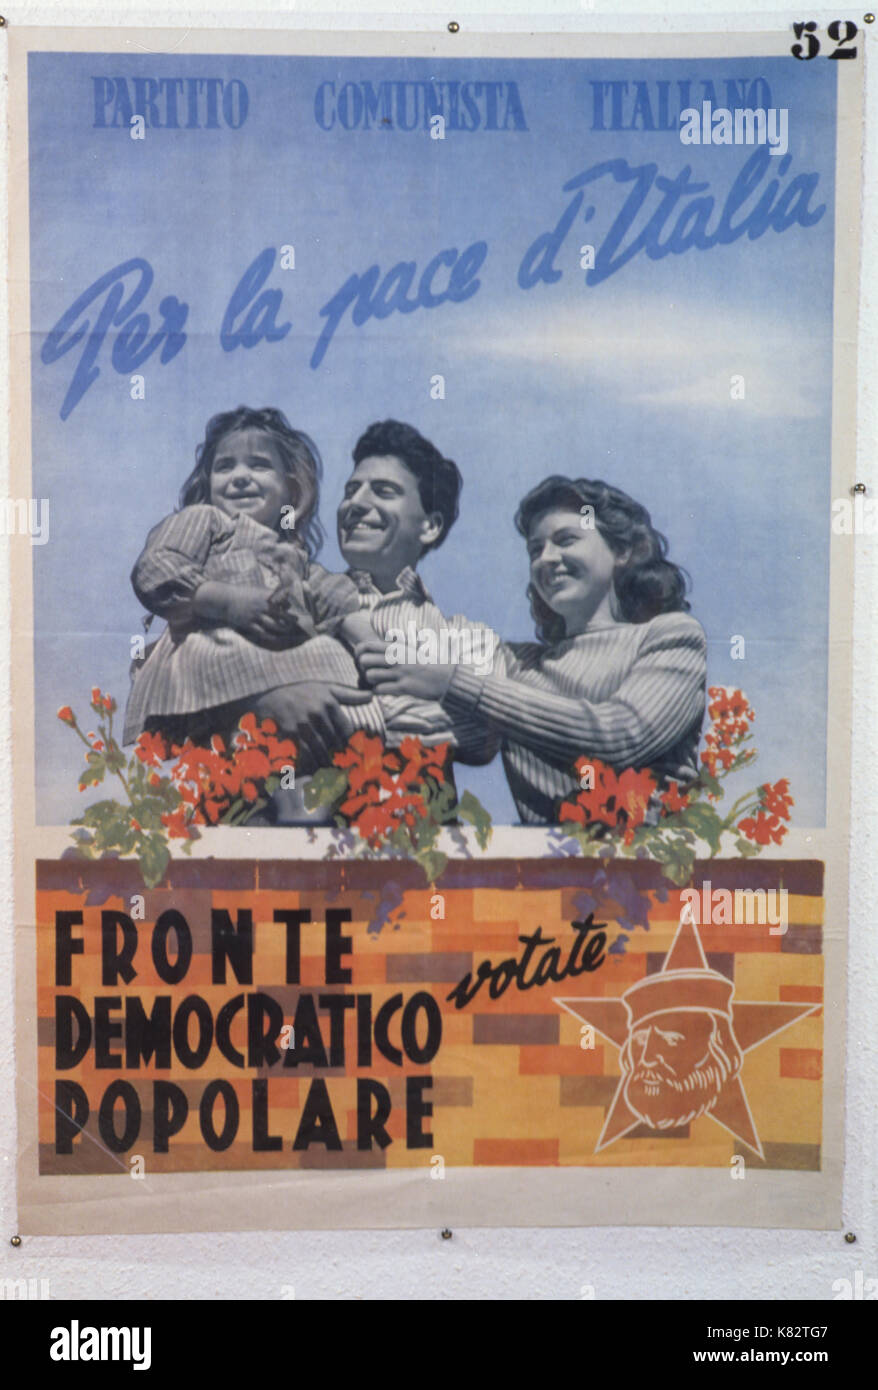 Parti communiste italien, ont voté pour la paix du front démocratique populaire de l'Italie, l'affiche 1948 Banque D'Images